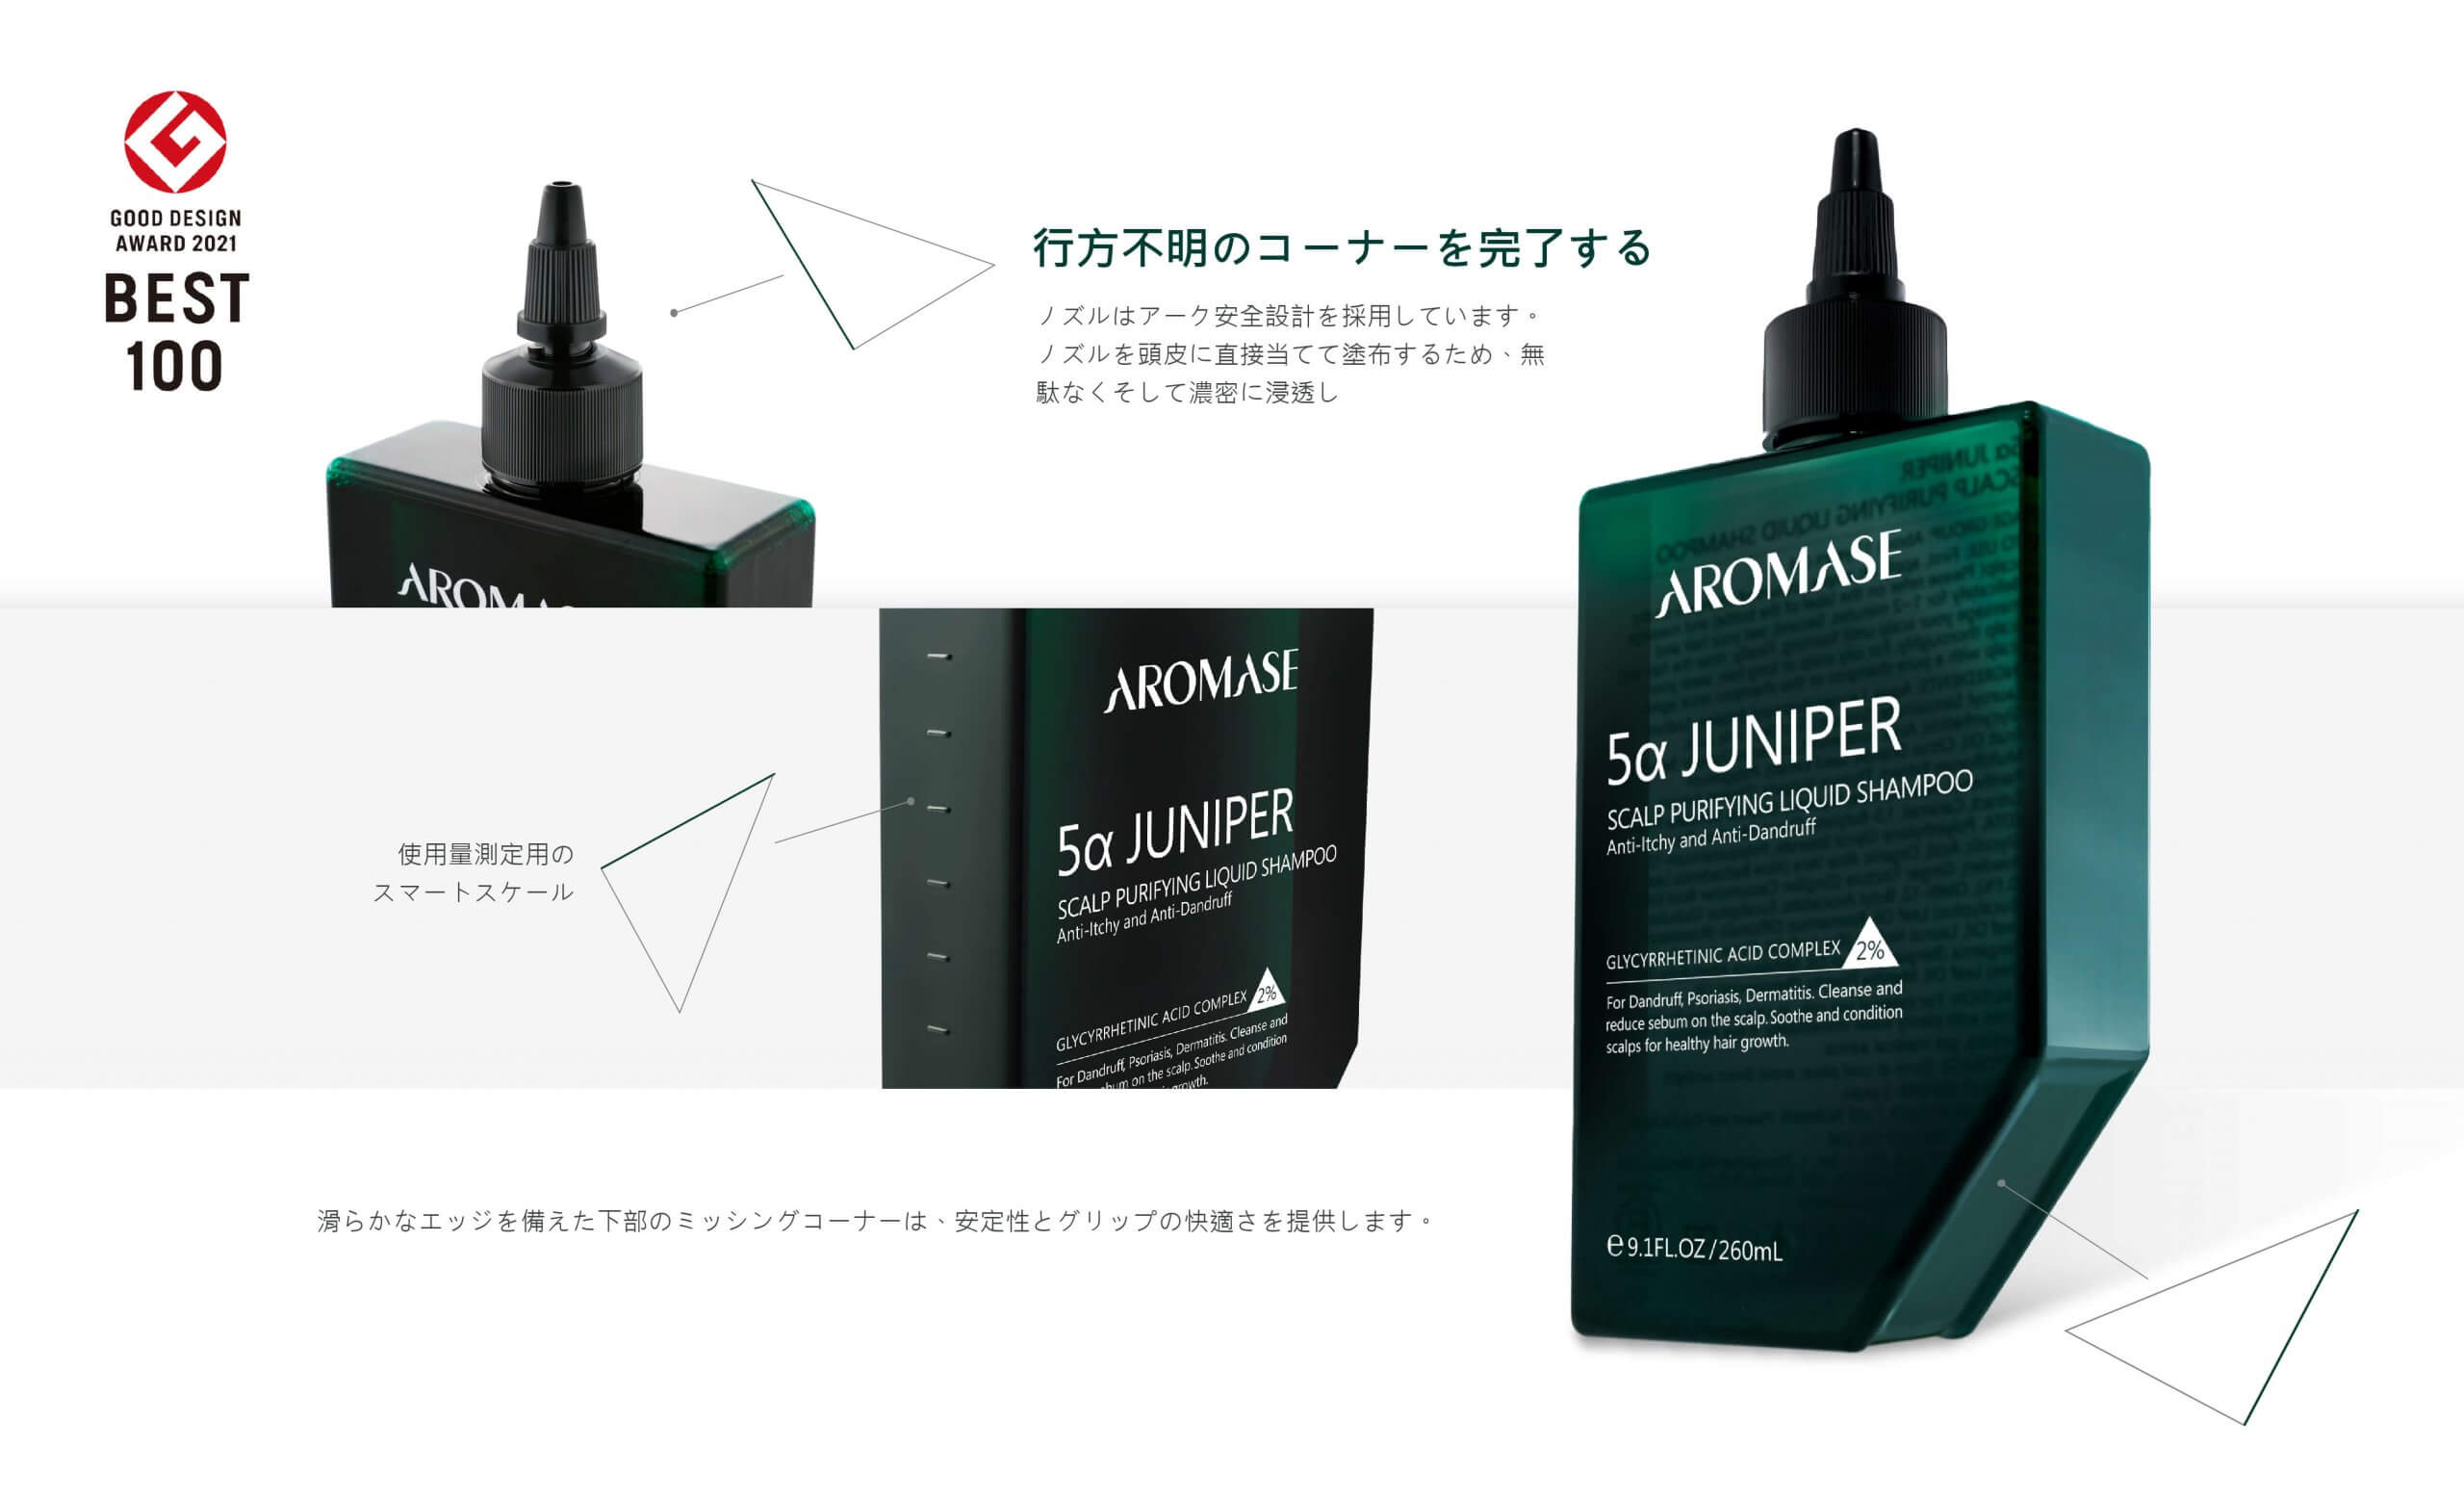 AROMASE_Good Design-best 100-the best shampoo brand